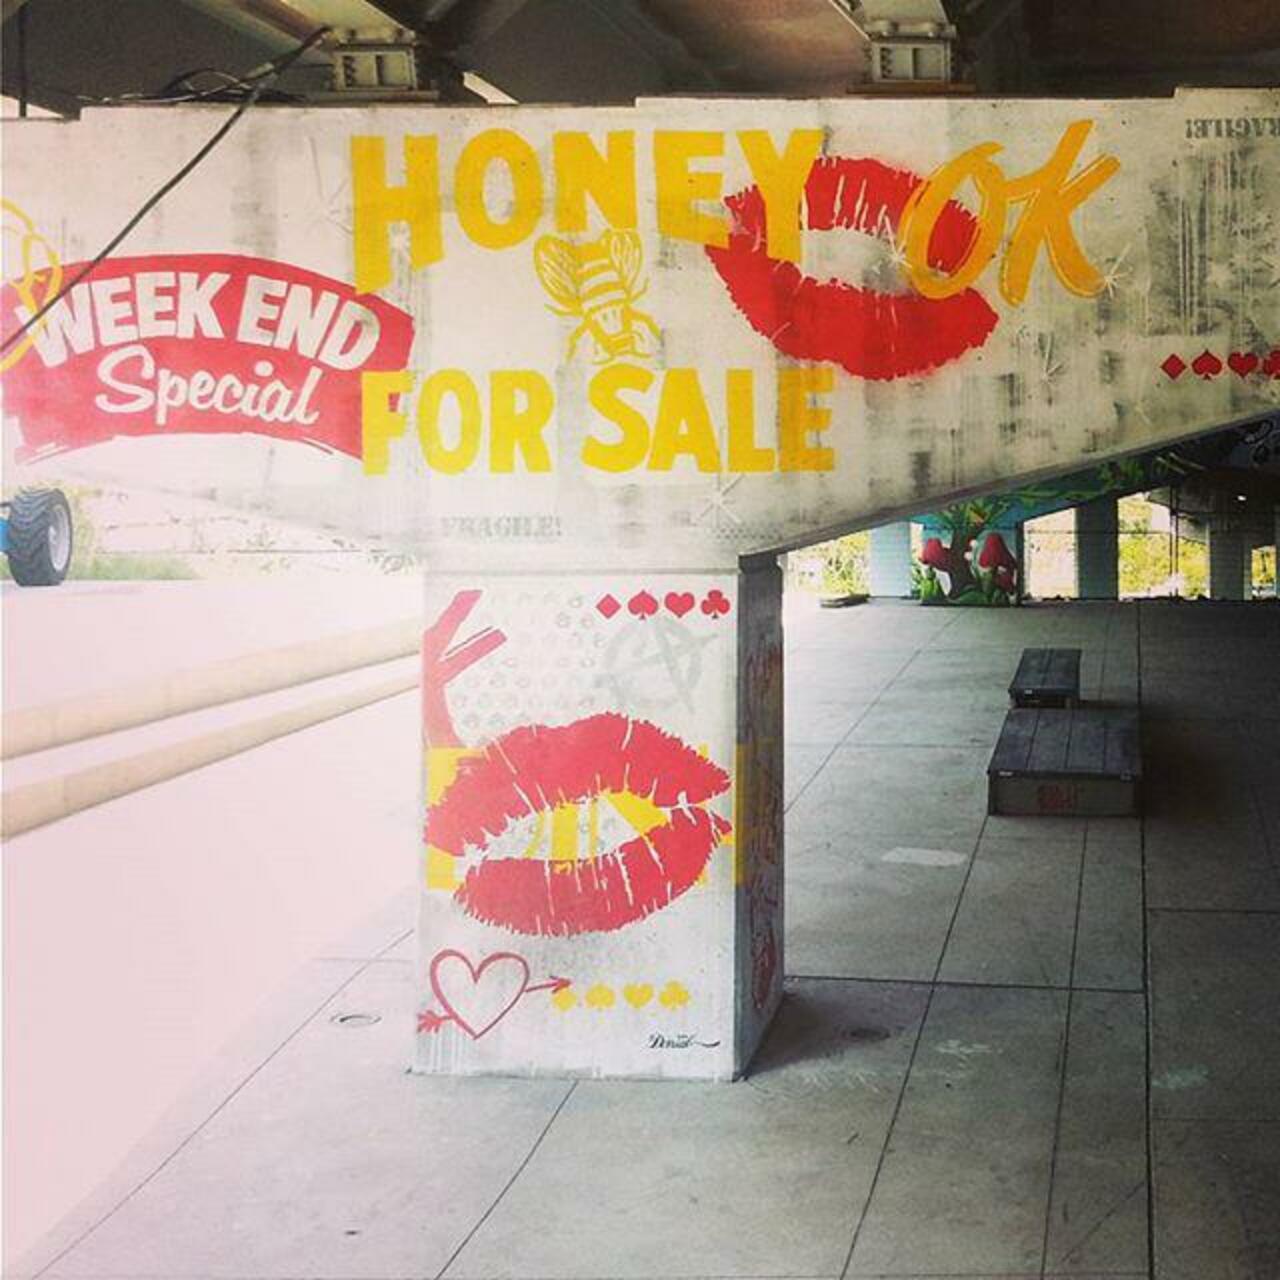 Honey for Sale!  #the6ix #thesix #tdot #Toronto #corktown #graffiti #graff #mural #art #arte #artwork #underpass… http://t.co/RgWvhIU2gy